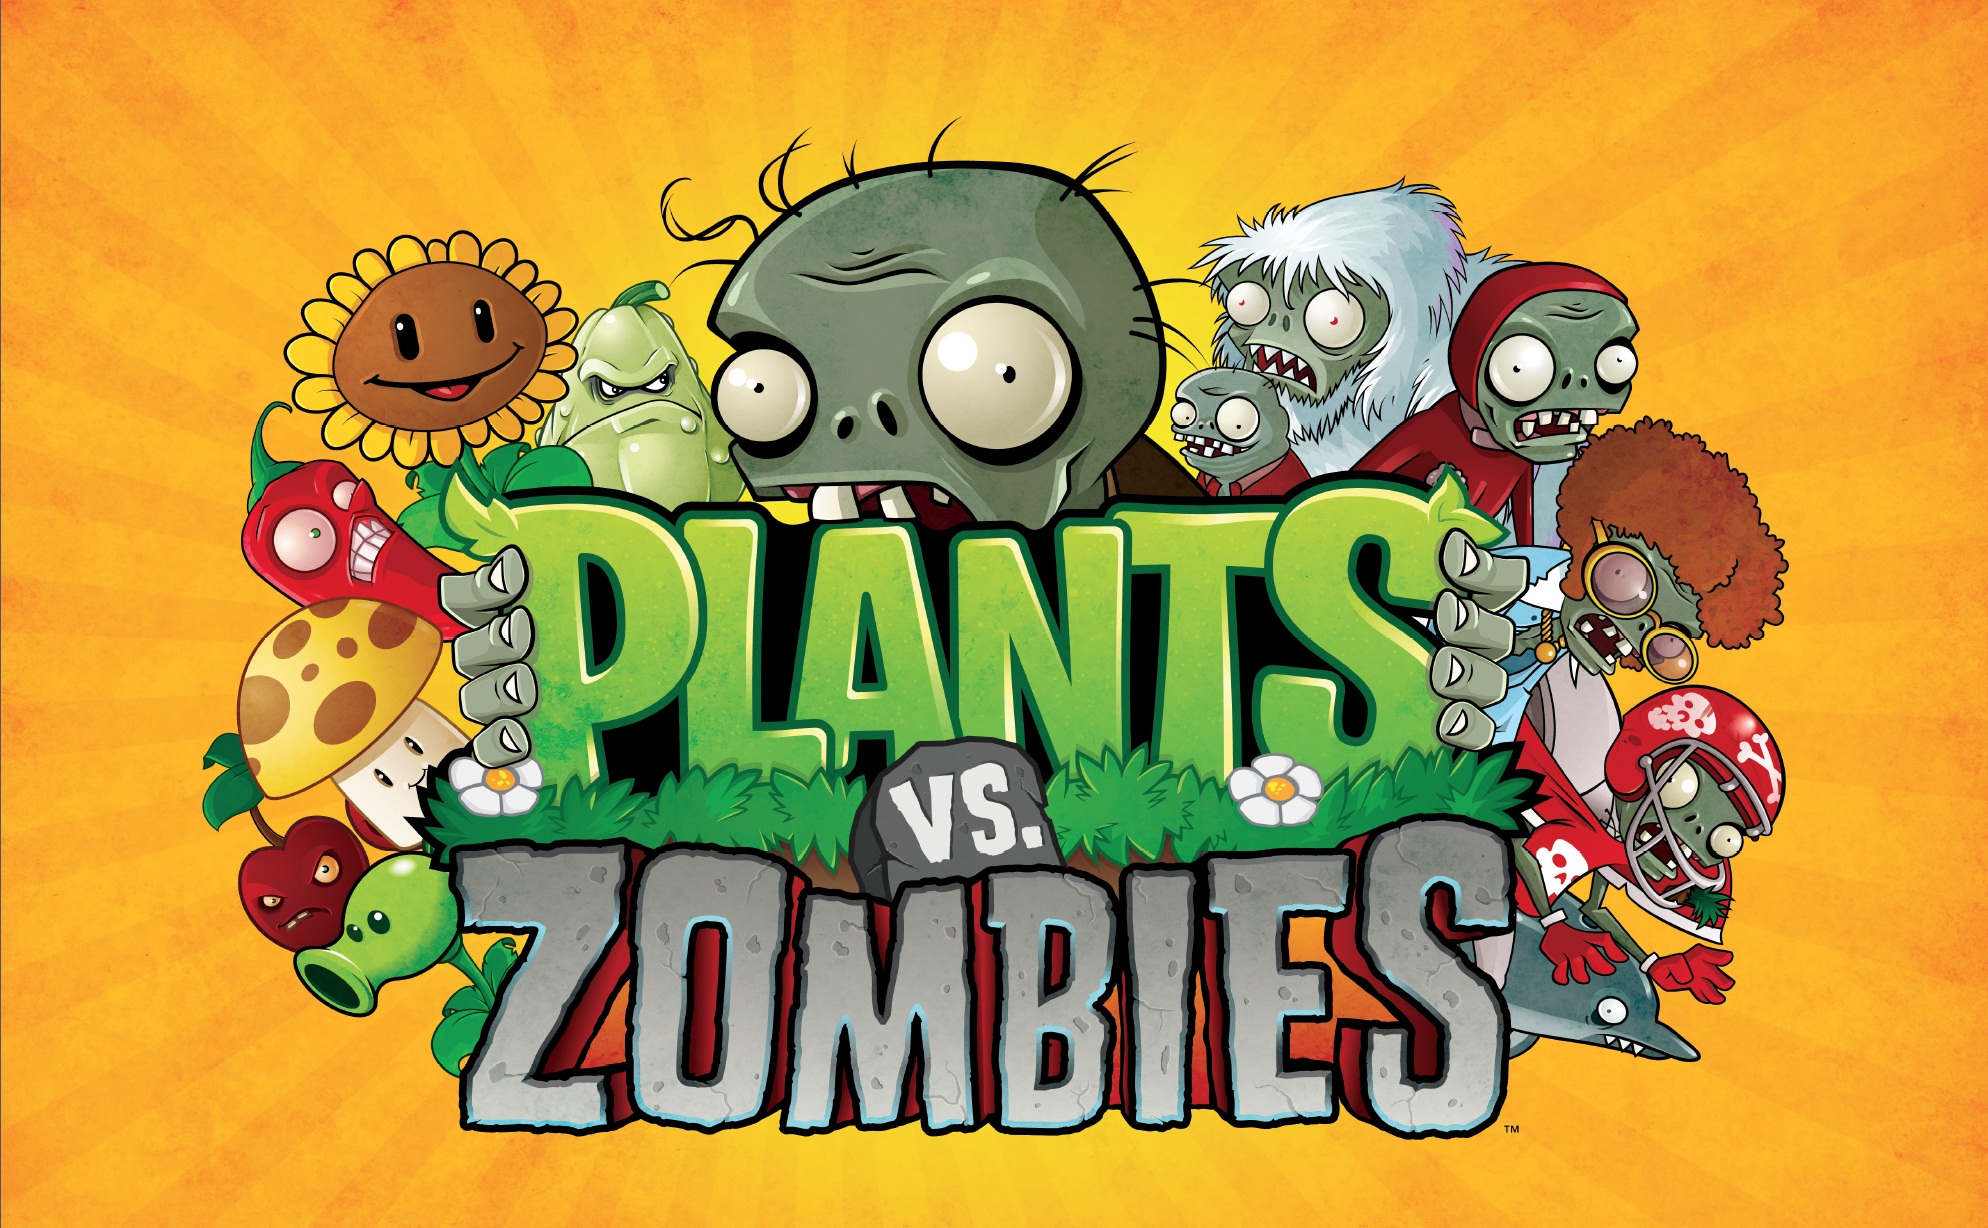 Plants vs. Zombies Free Download - GameTrex